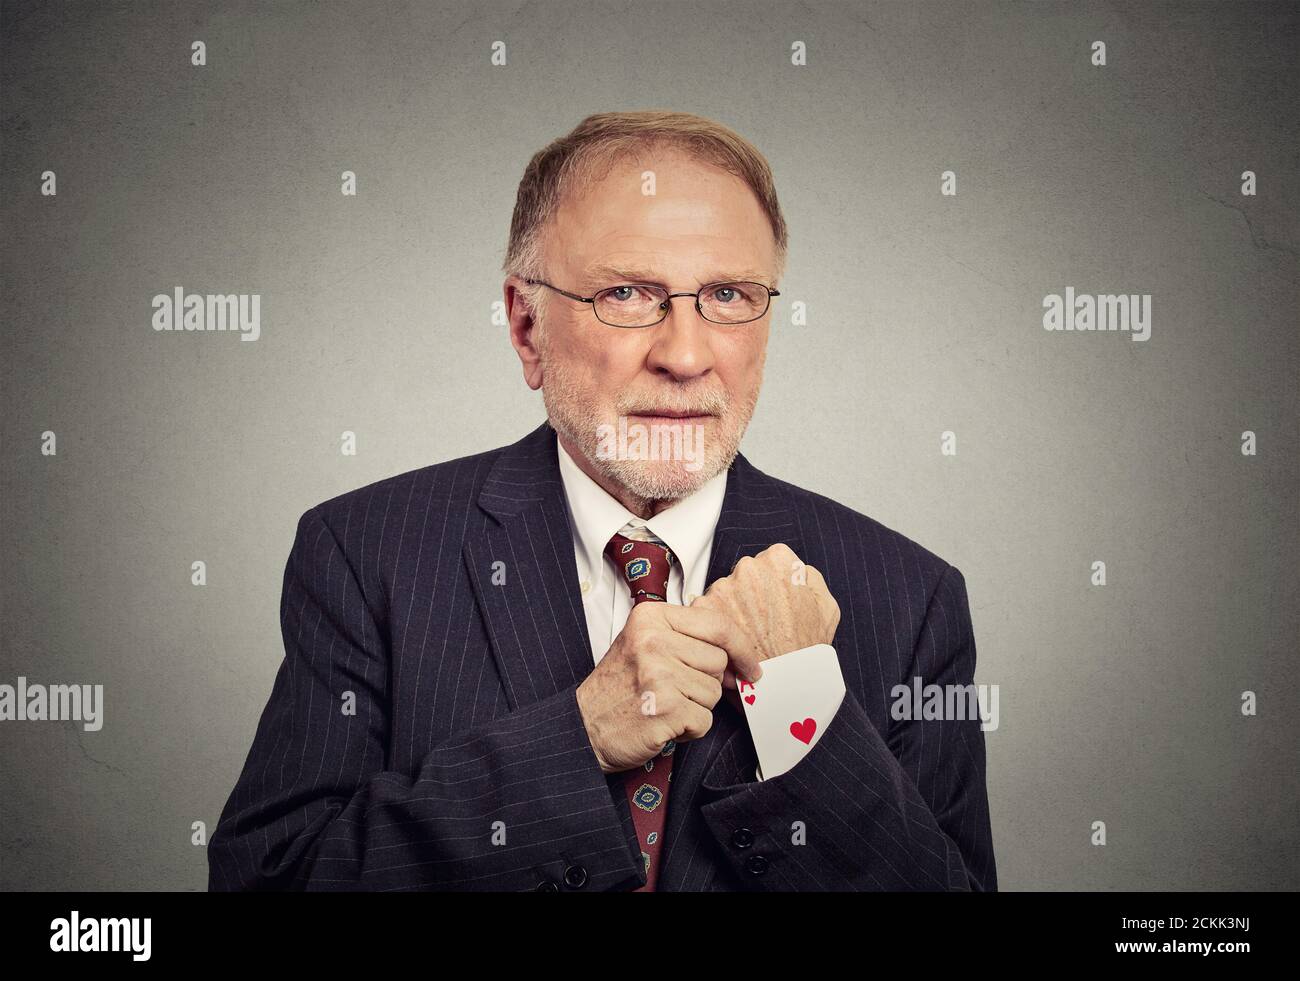 Nahaufnahme Porträt Senior Mann Deal Maker ziehen aus einem versteckten ace-Karte aus dem Anzug Jacke Ärmel isoliert auf grau Wandhintergrund Stockfoto